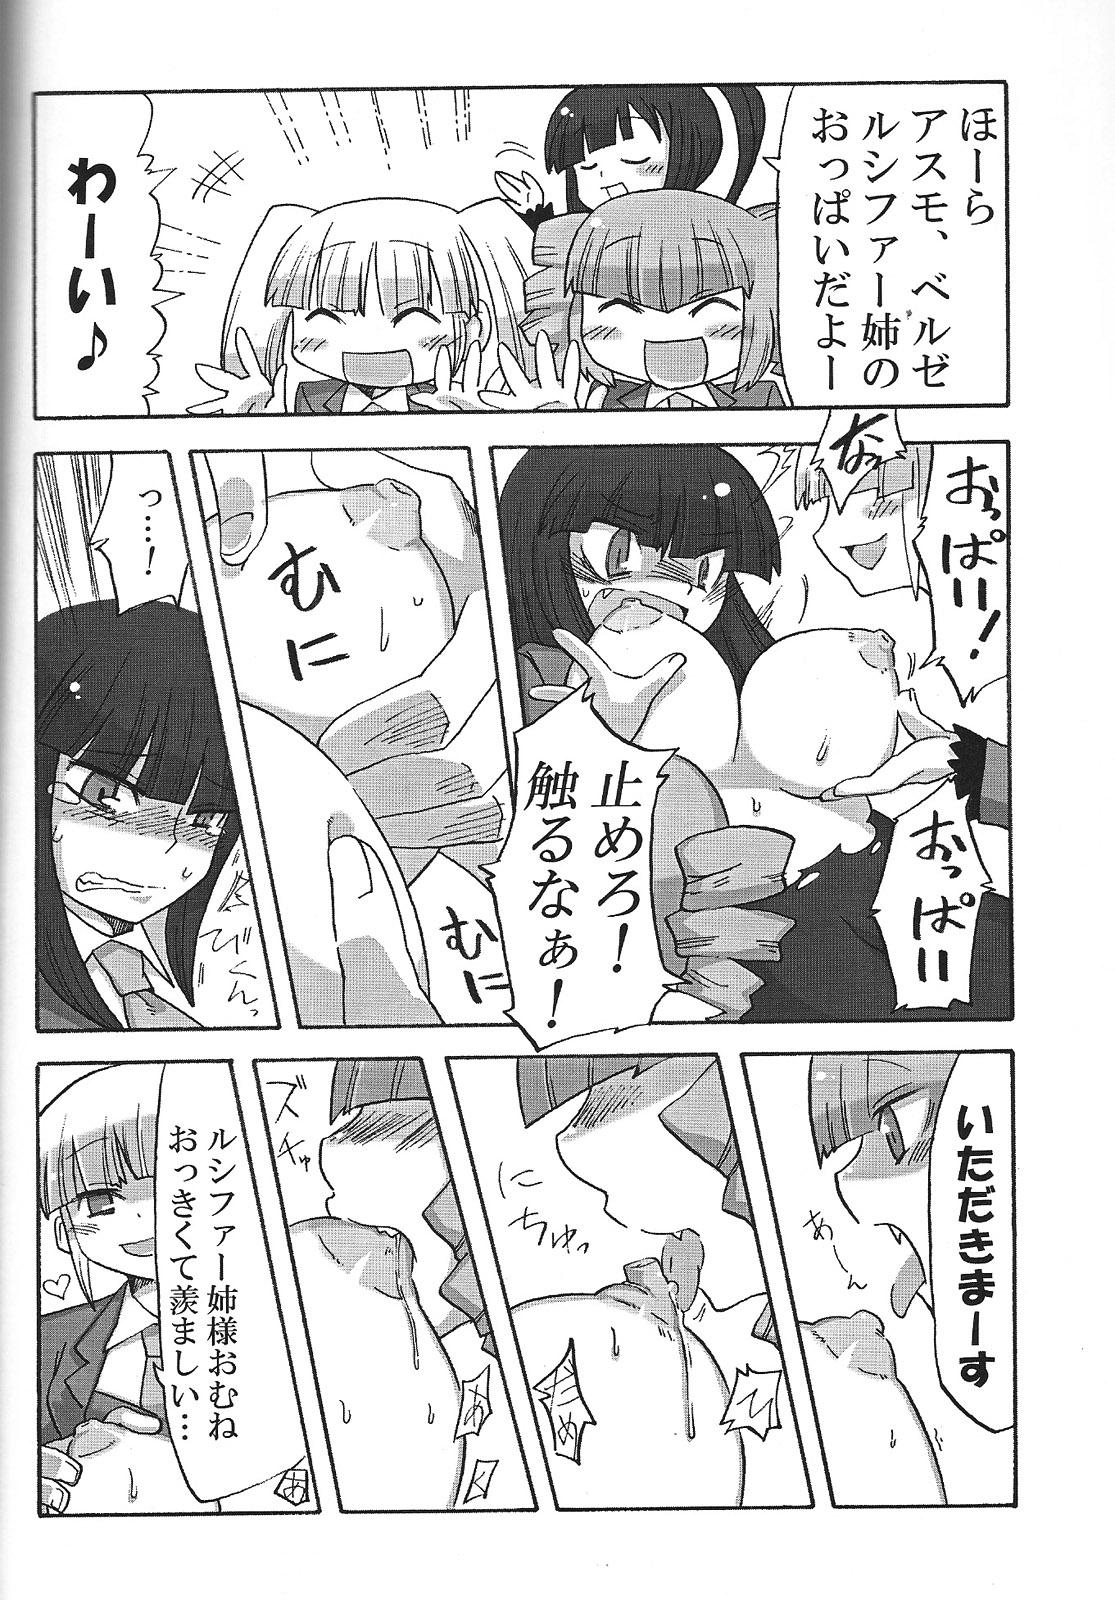 Rubbing Nakayoshi 7 Shimai - Umineko no naku koro ni Ftvgirls - Page 9